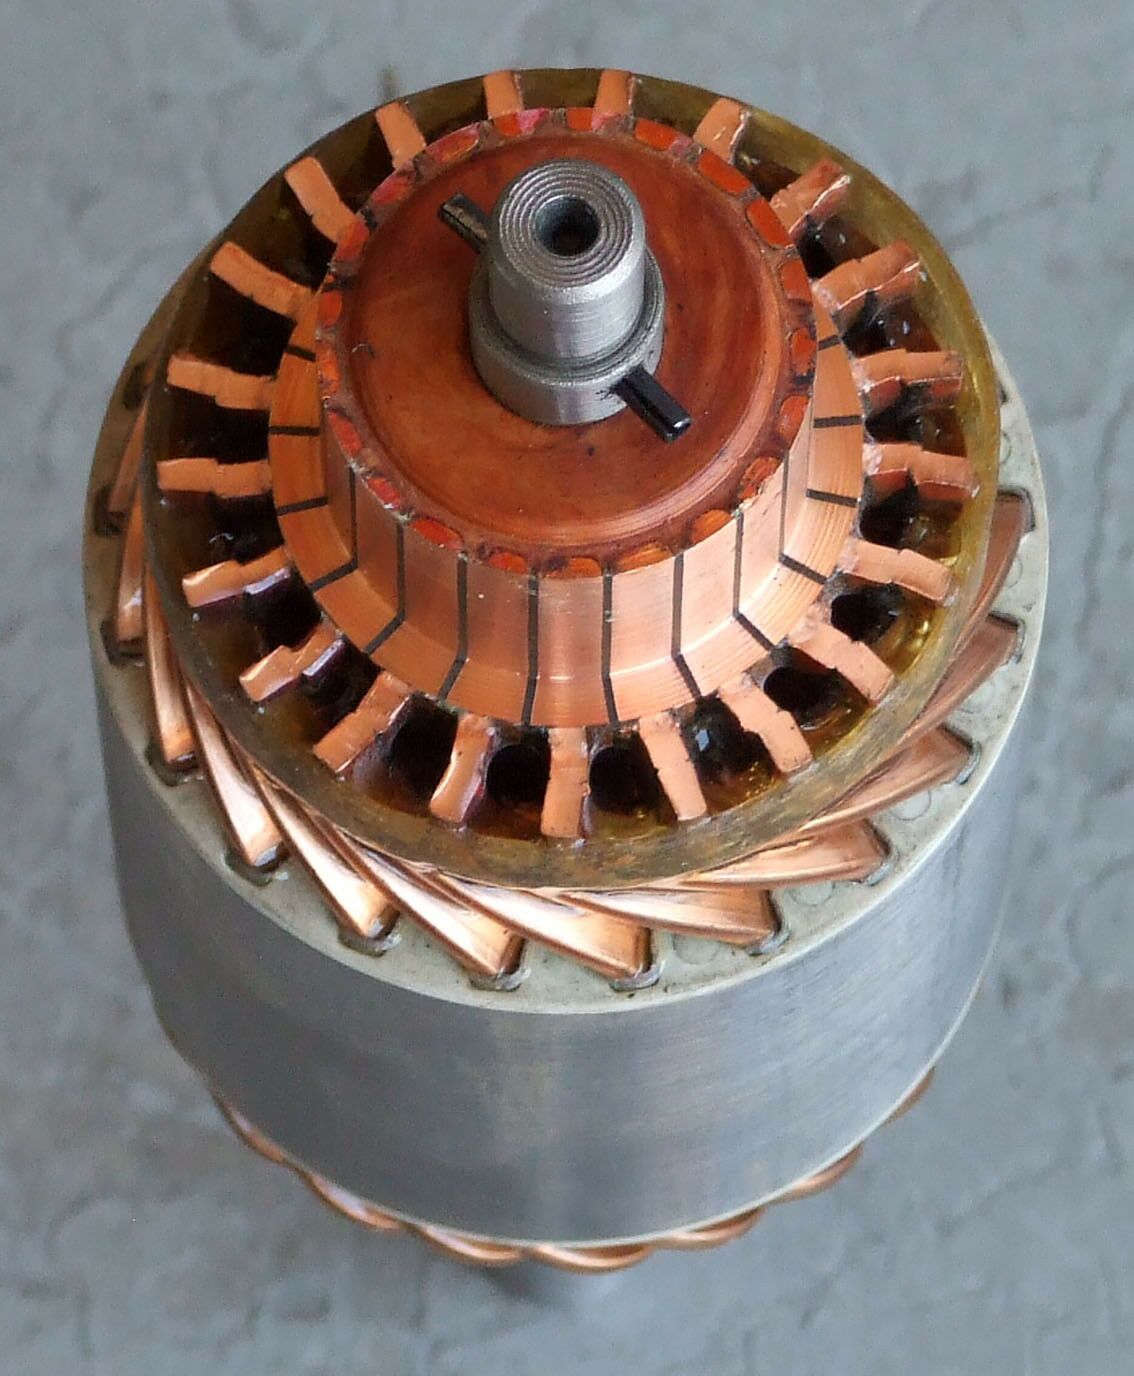 Rotor anl lucas m50 viljuskar perkins 12 spirala